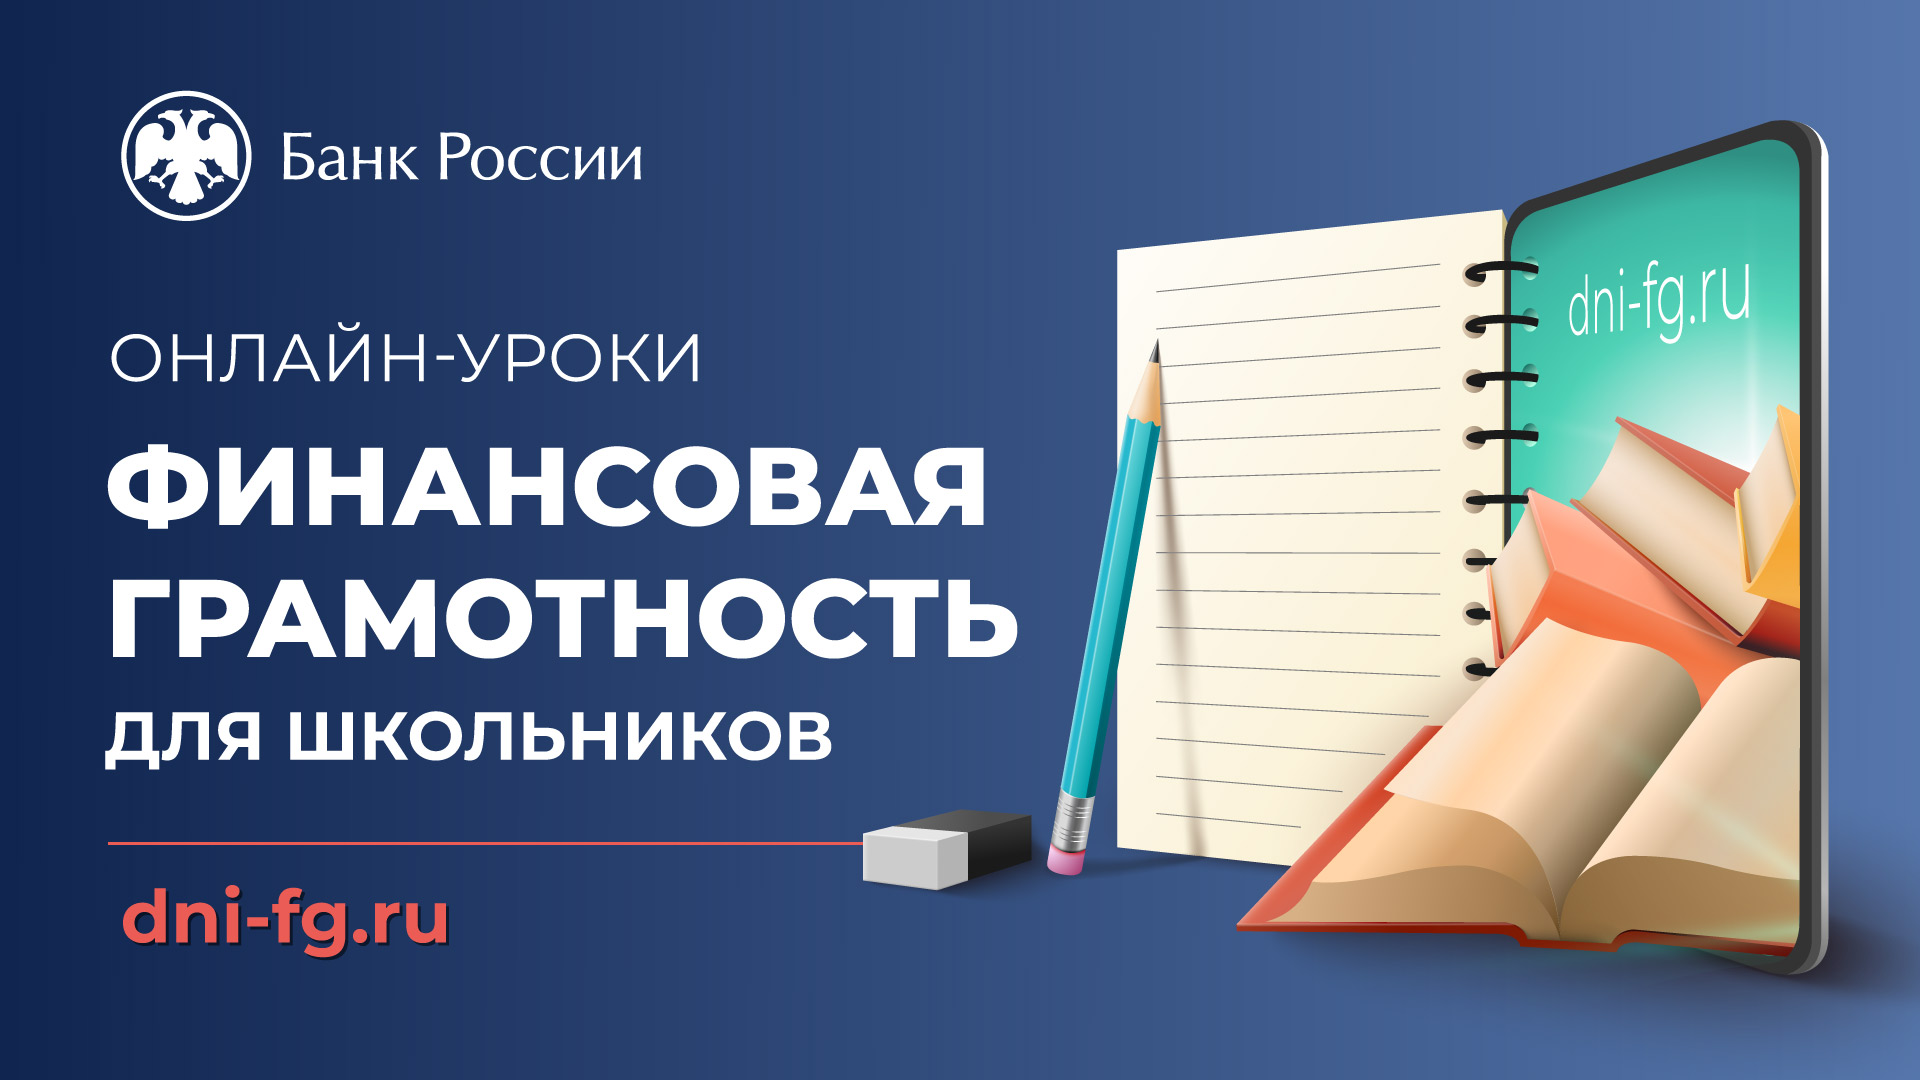 Приглашаем принять участие в мероприятиях Банка России по финансовой грамотности!.